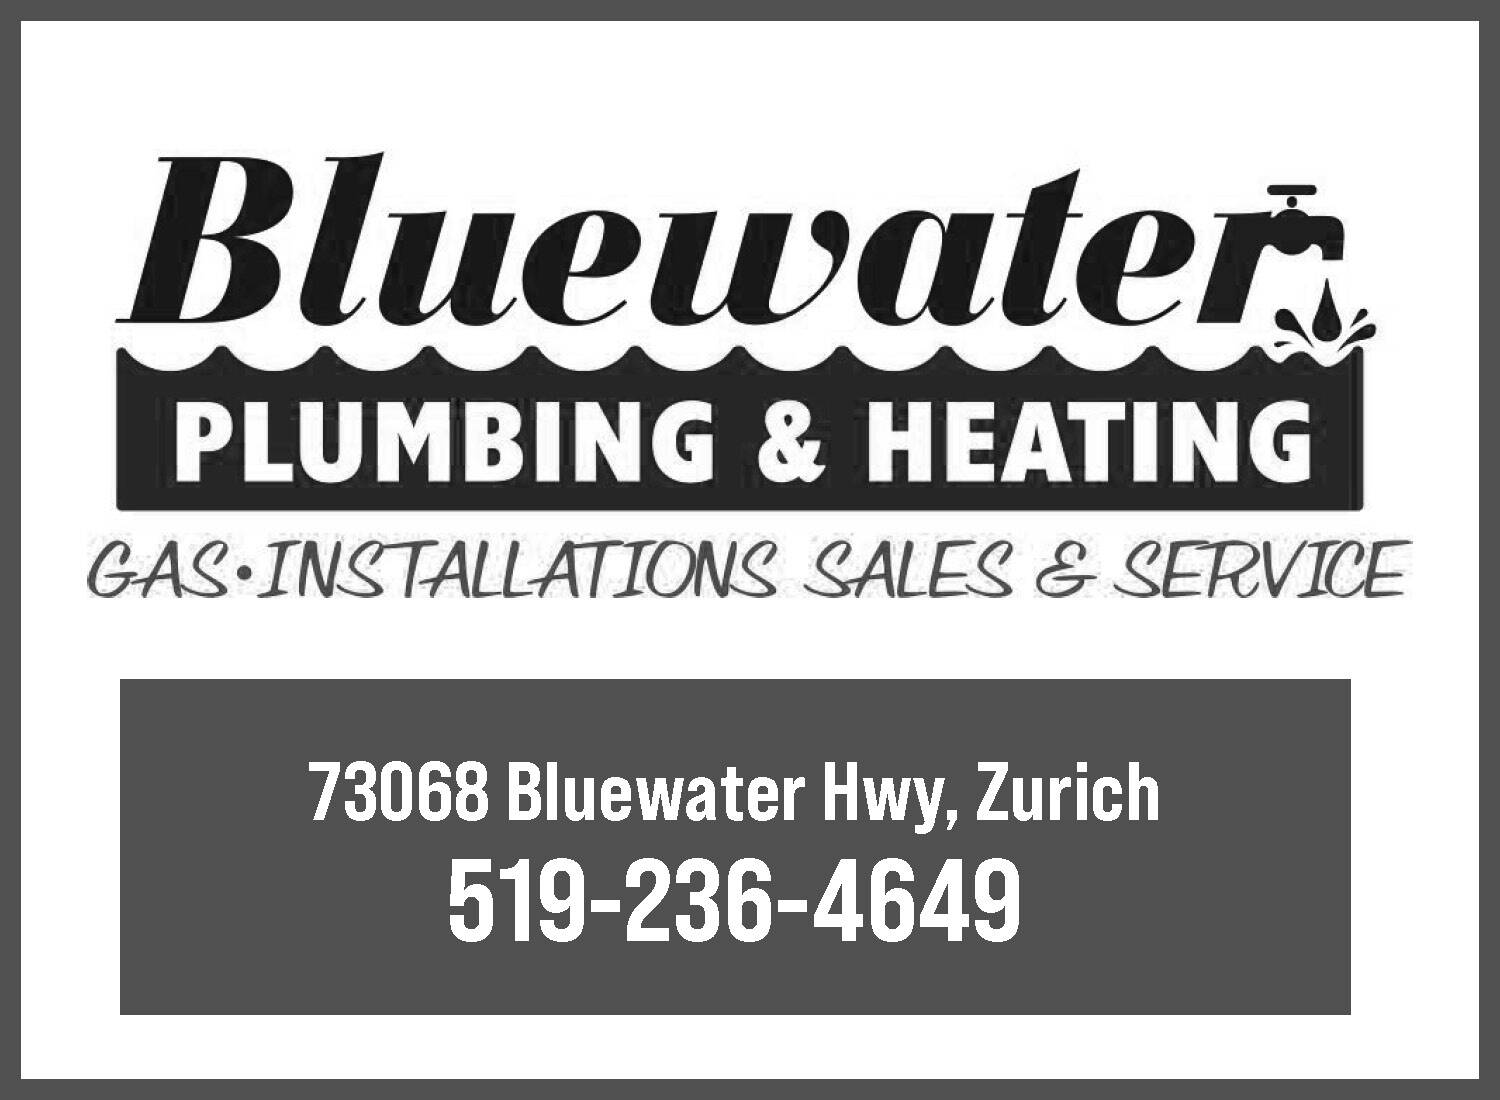 Bluewater Plumbing & Heating 